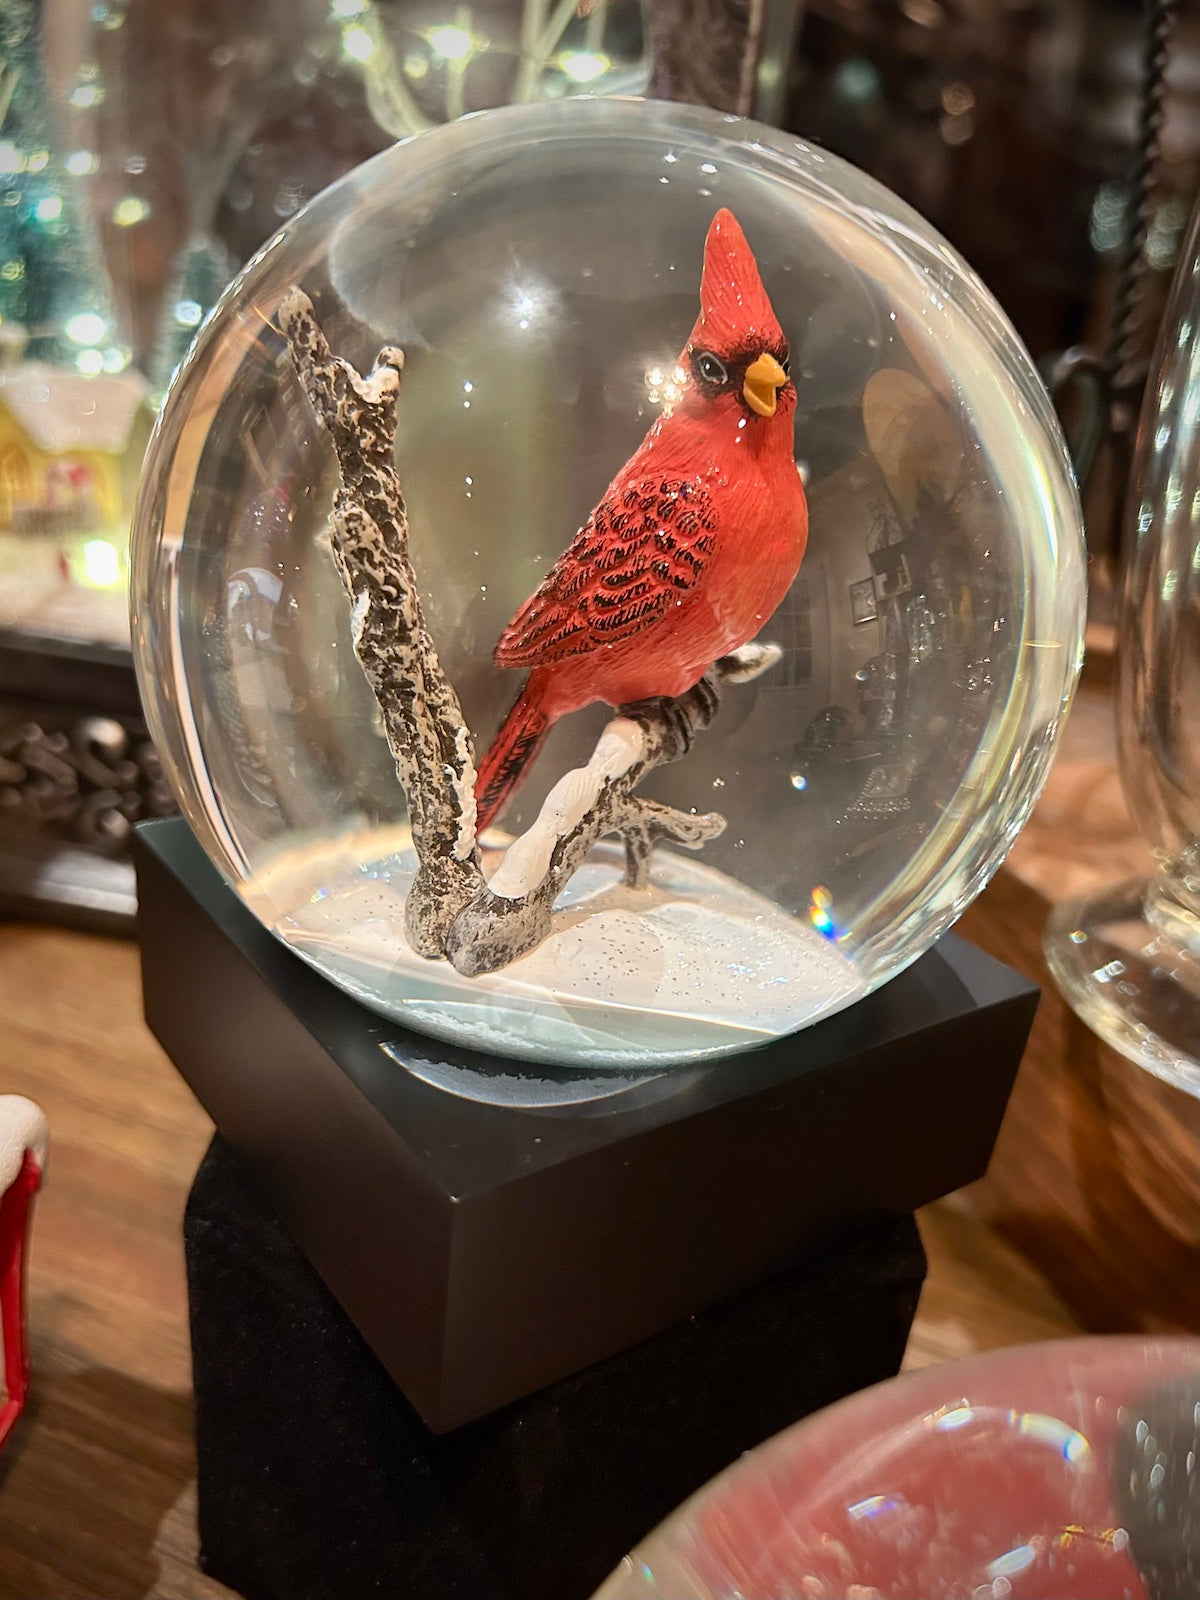 Cardinal Snow Globe